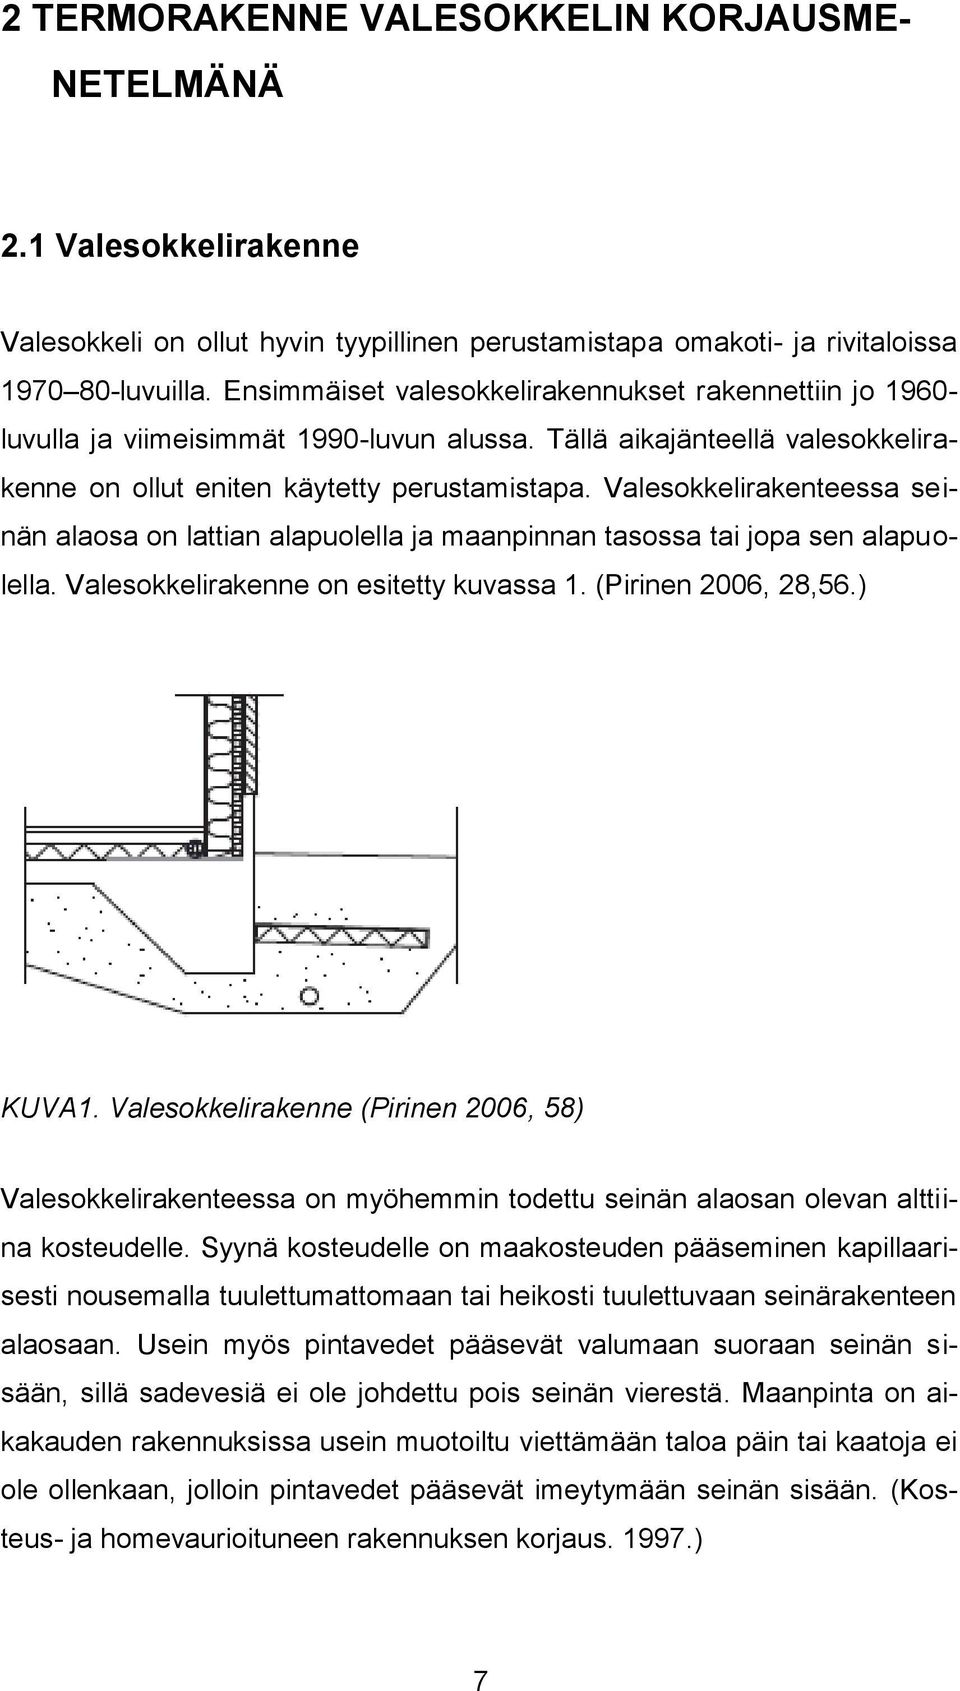 Valesokkelirakenteessa seinän alaosa on lattian alapuolella ja maanpinnan tasossa tai jopa sen alapuolella. Valesokkelirakenne on esitetty kuvassa 1. (Pirinen 2006, 28,56.) KUVA1.